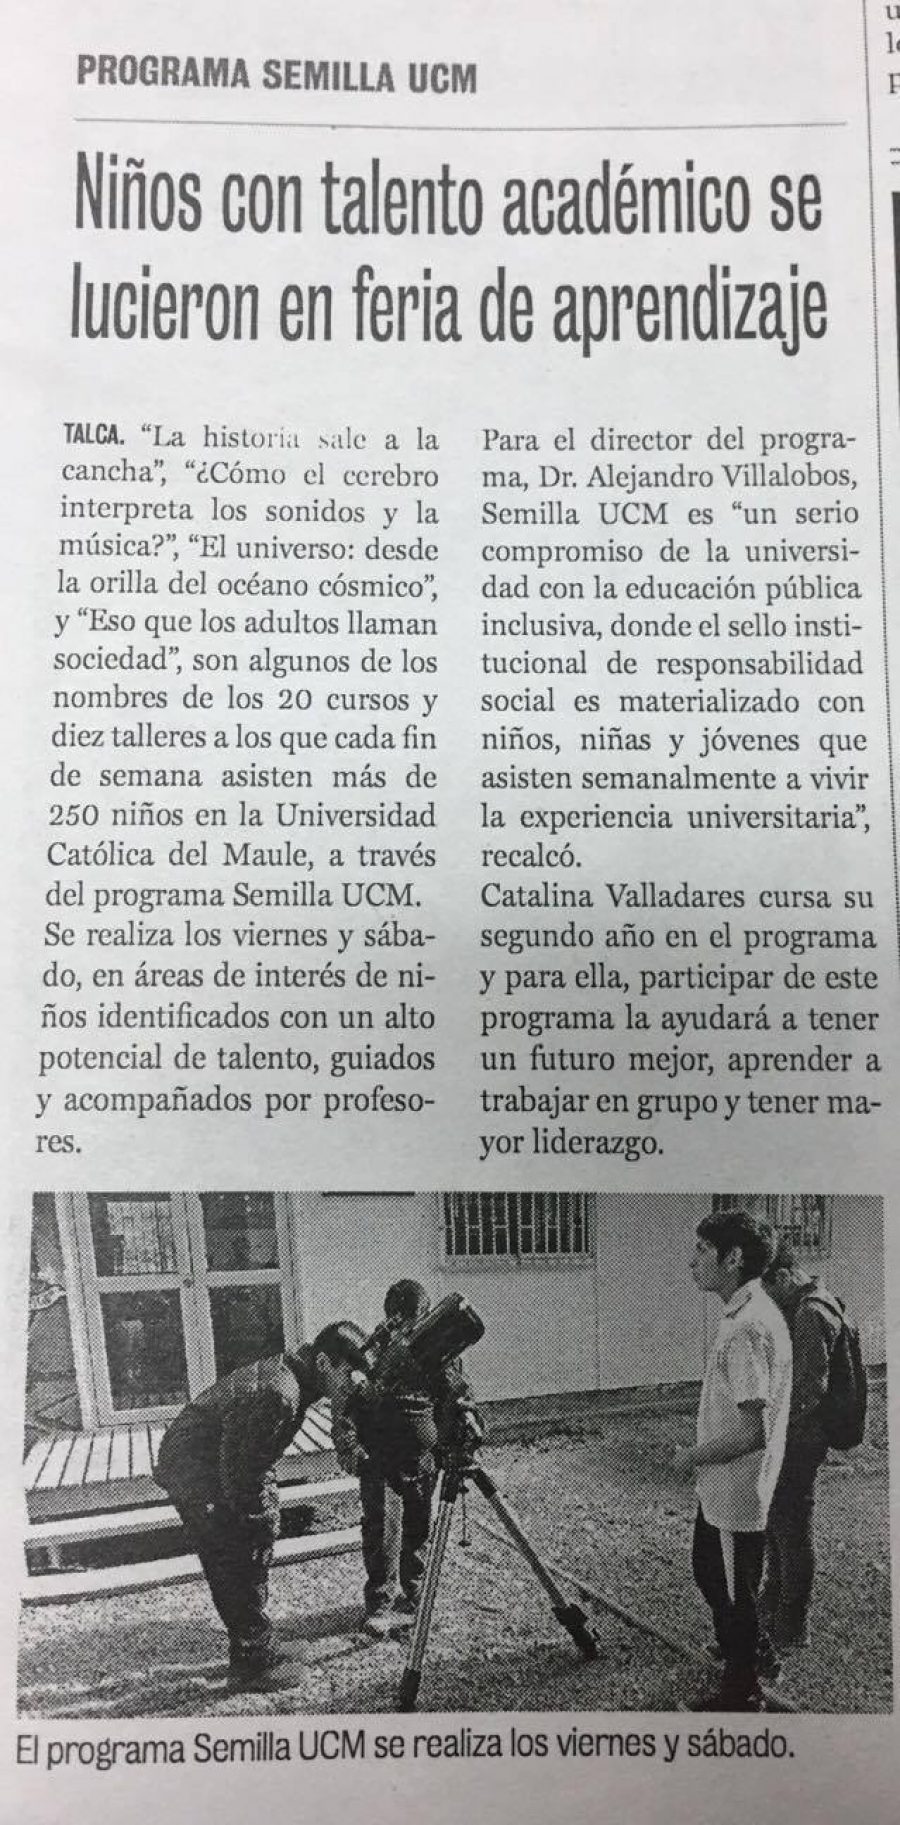 25 de noviembre en Diario La Prensa: “Niños con talento académico se lucieron en feria de aprendizaje”